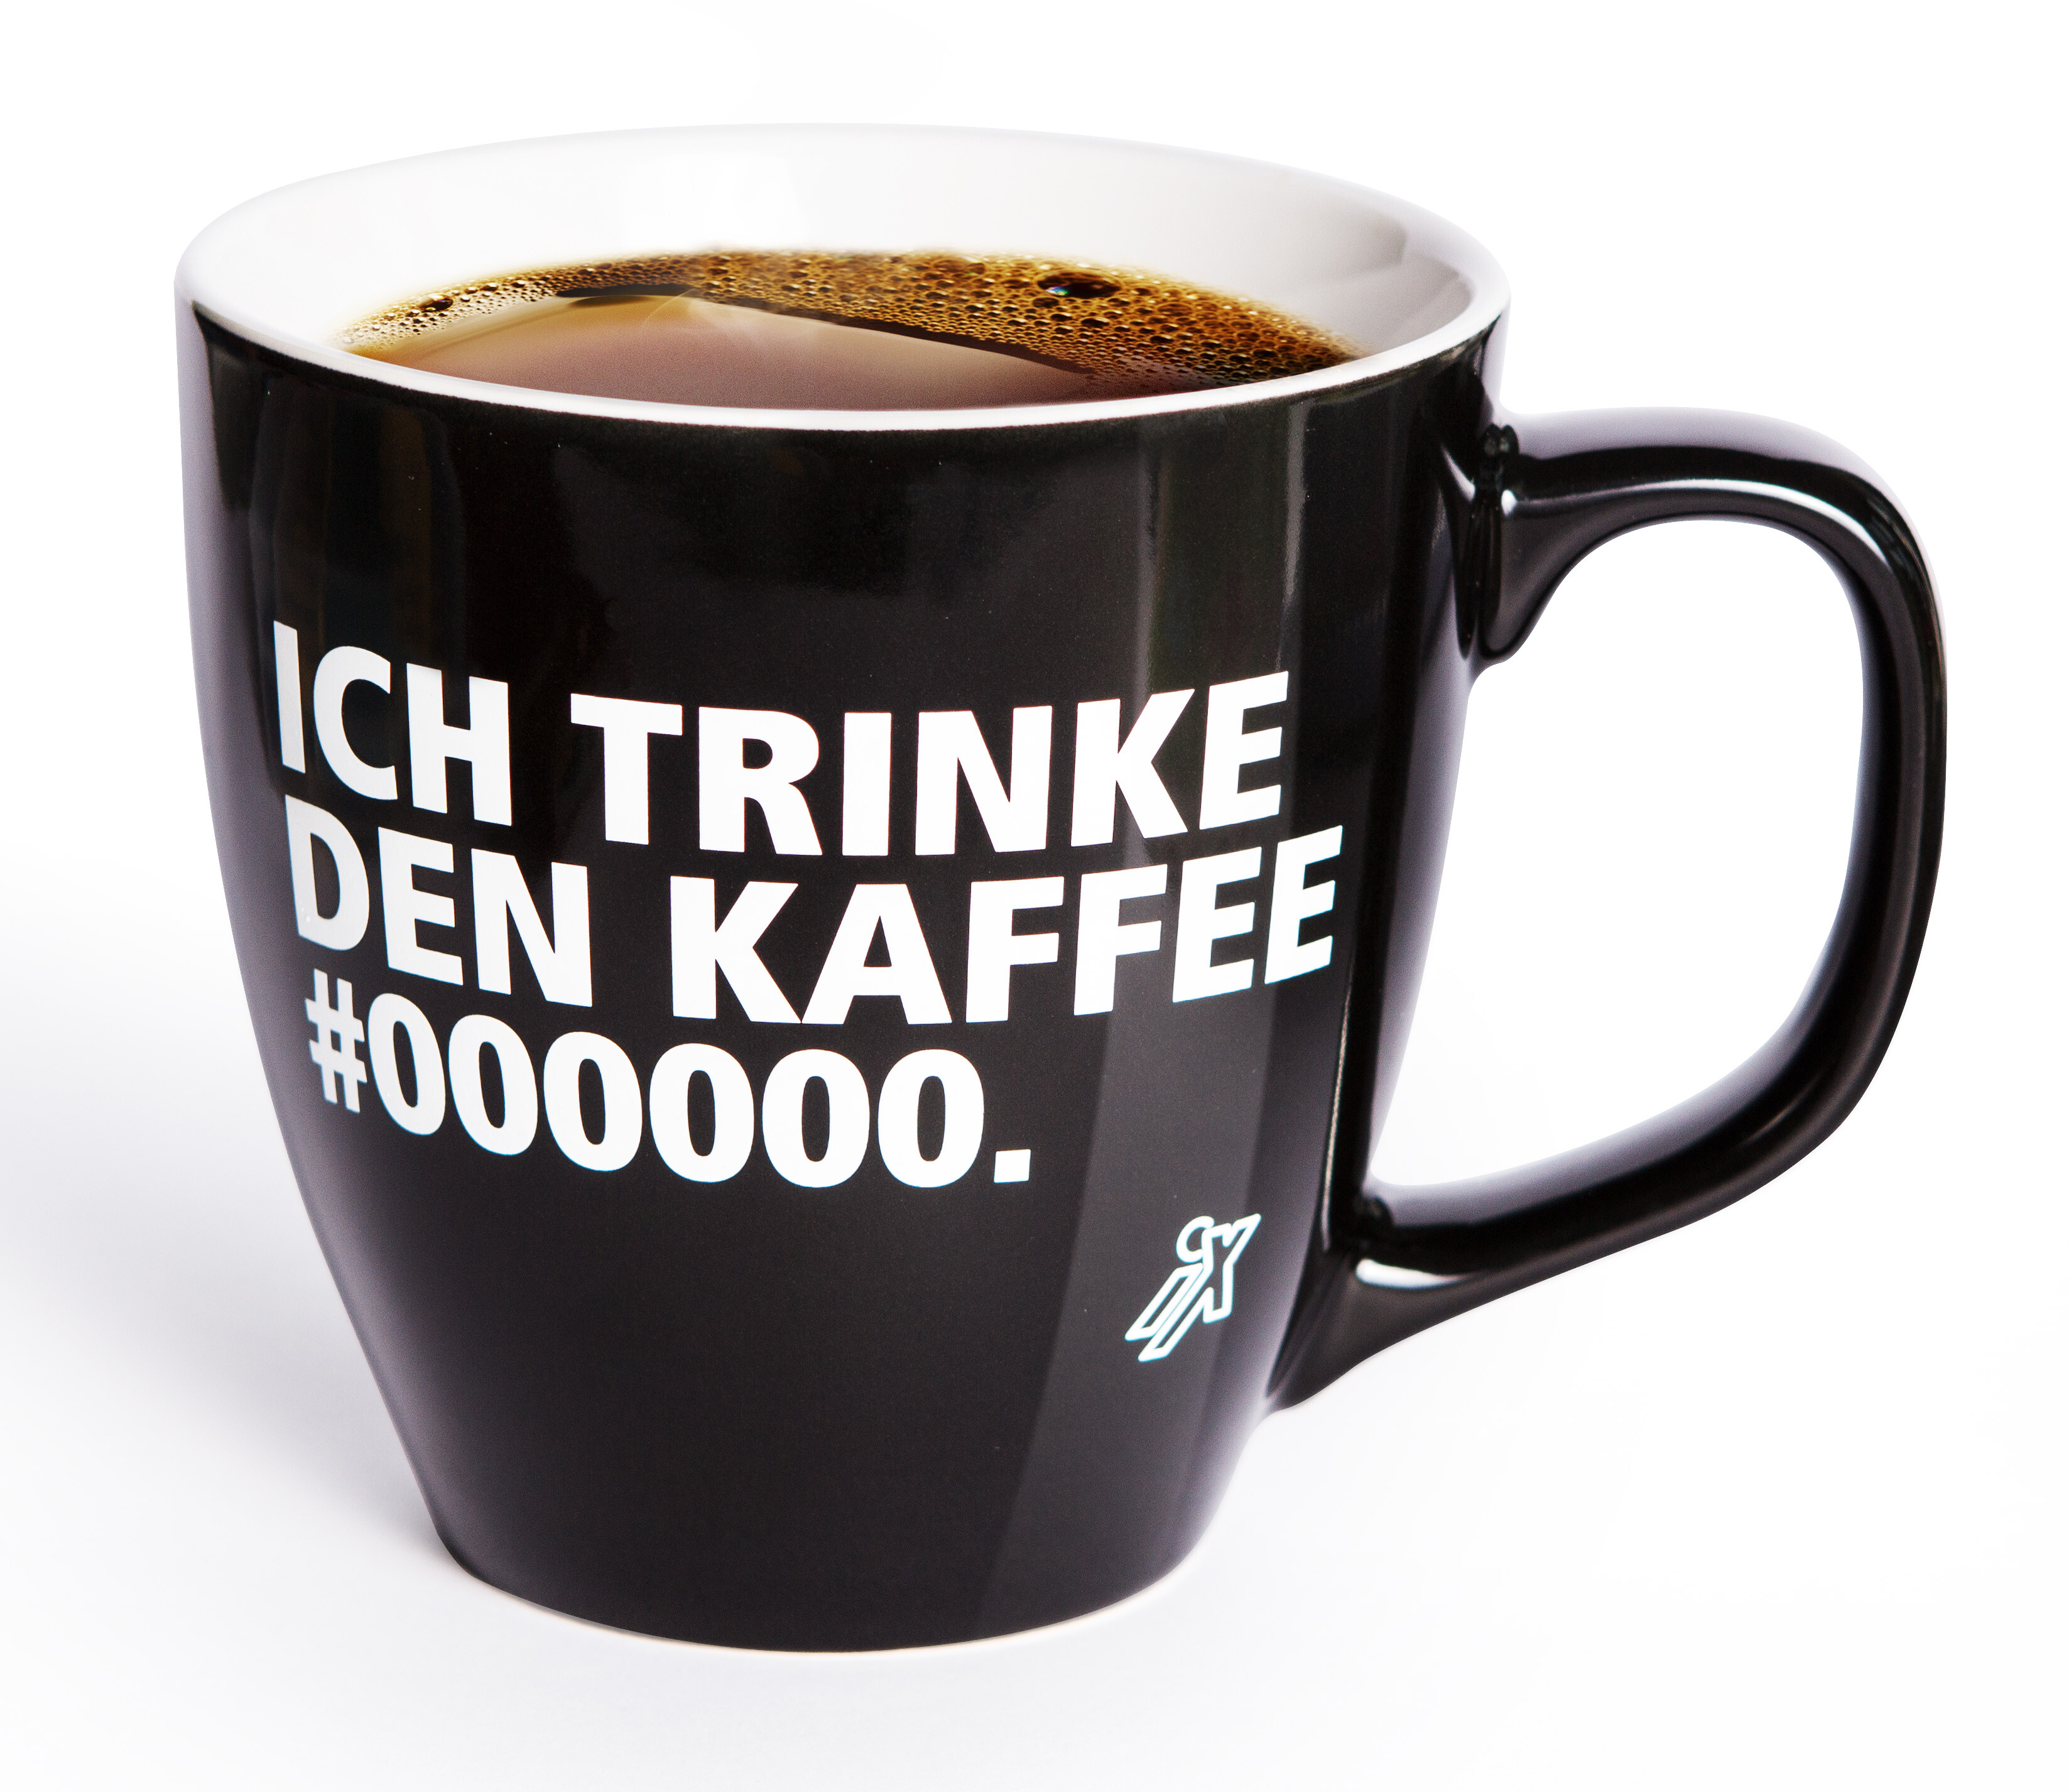 iX Kaffeebecher - Ich trinke den Kaffee #000000